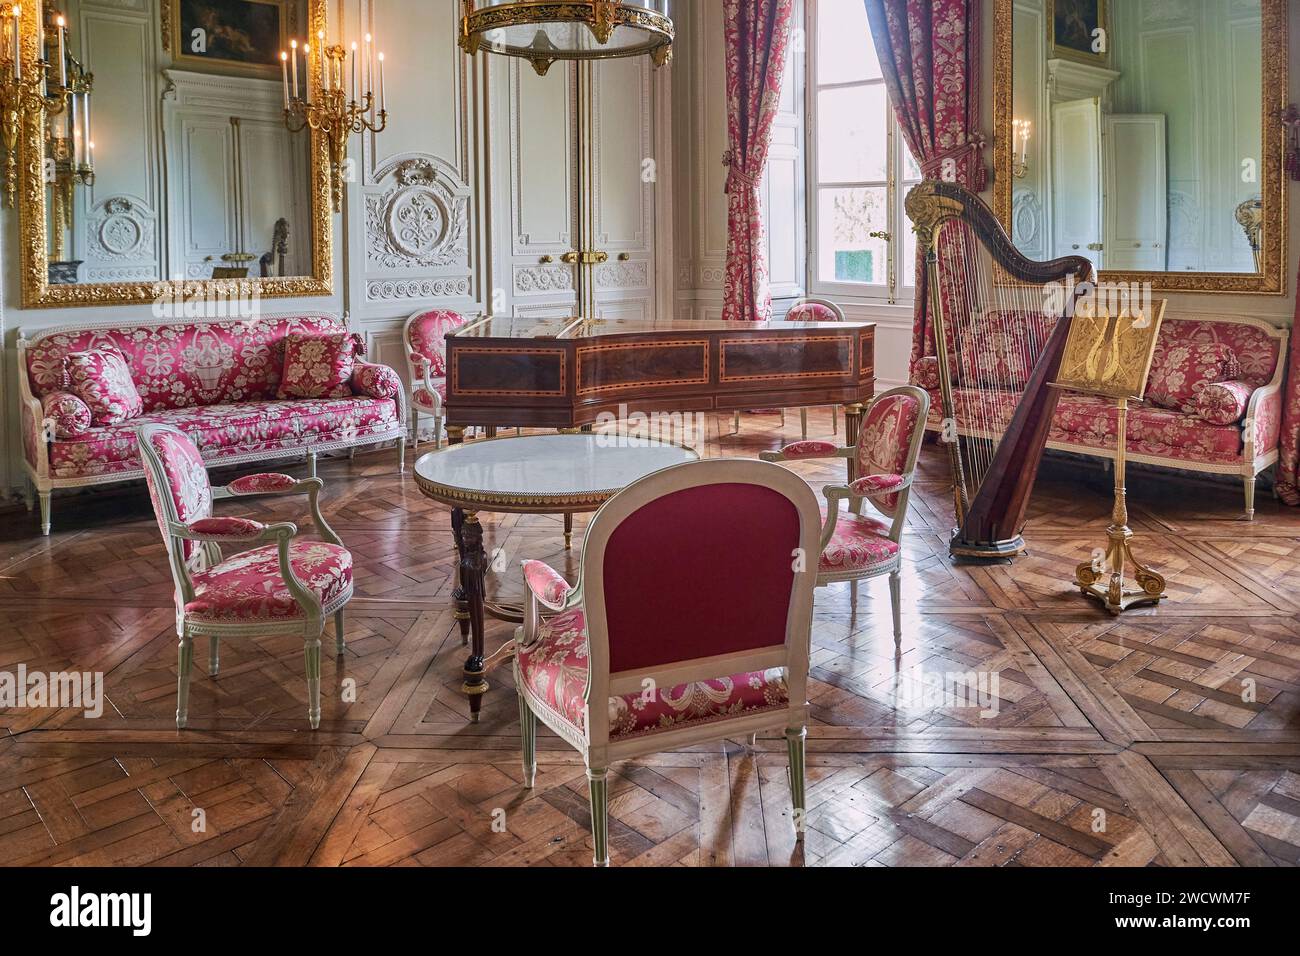 Frankreich, Yvelines, Versailles, Schloss von Versailles, das von der UNESCO zum Weltkulturerbe erklärt wurde, der Gesellschaftsraum des Petit Trianon Palace Stockfoto